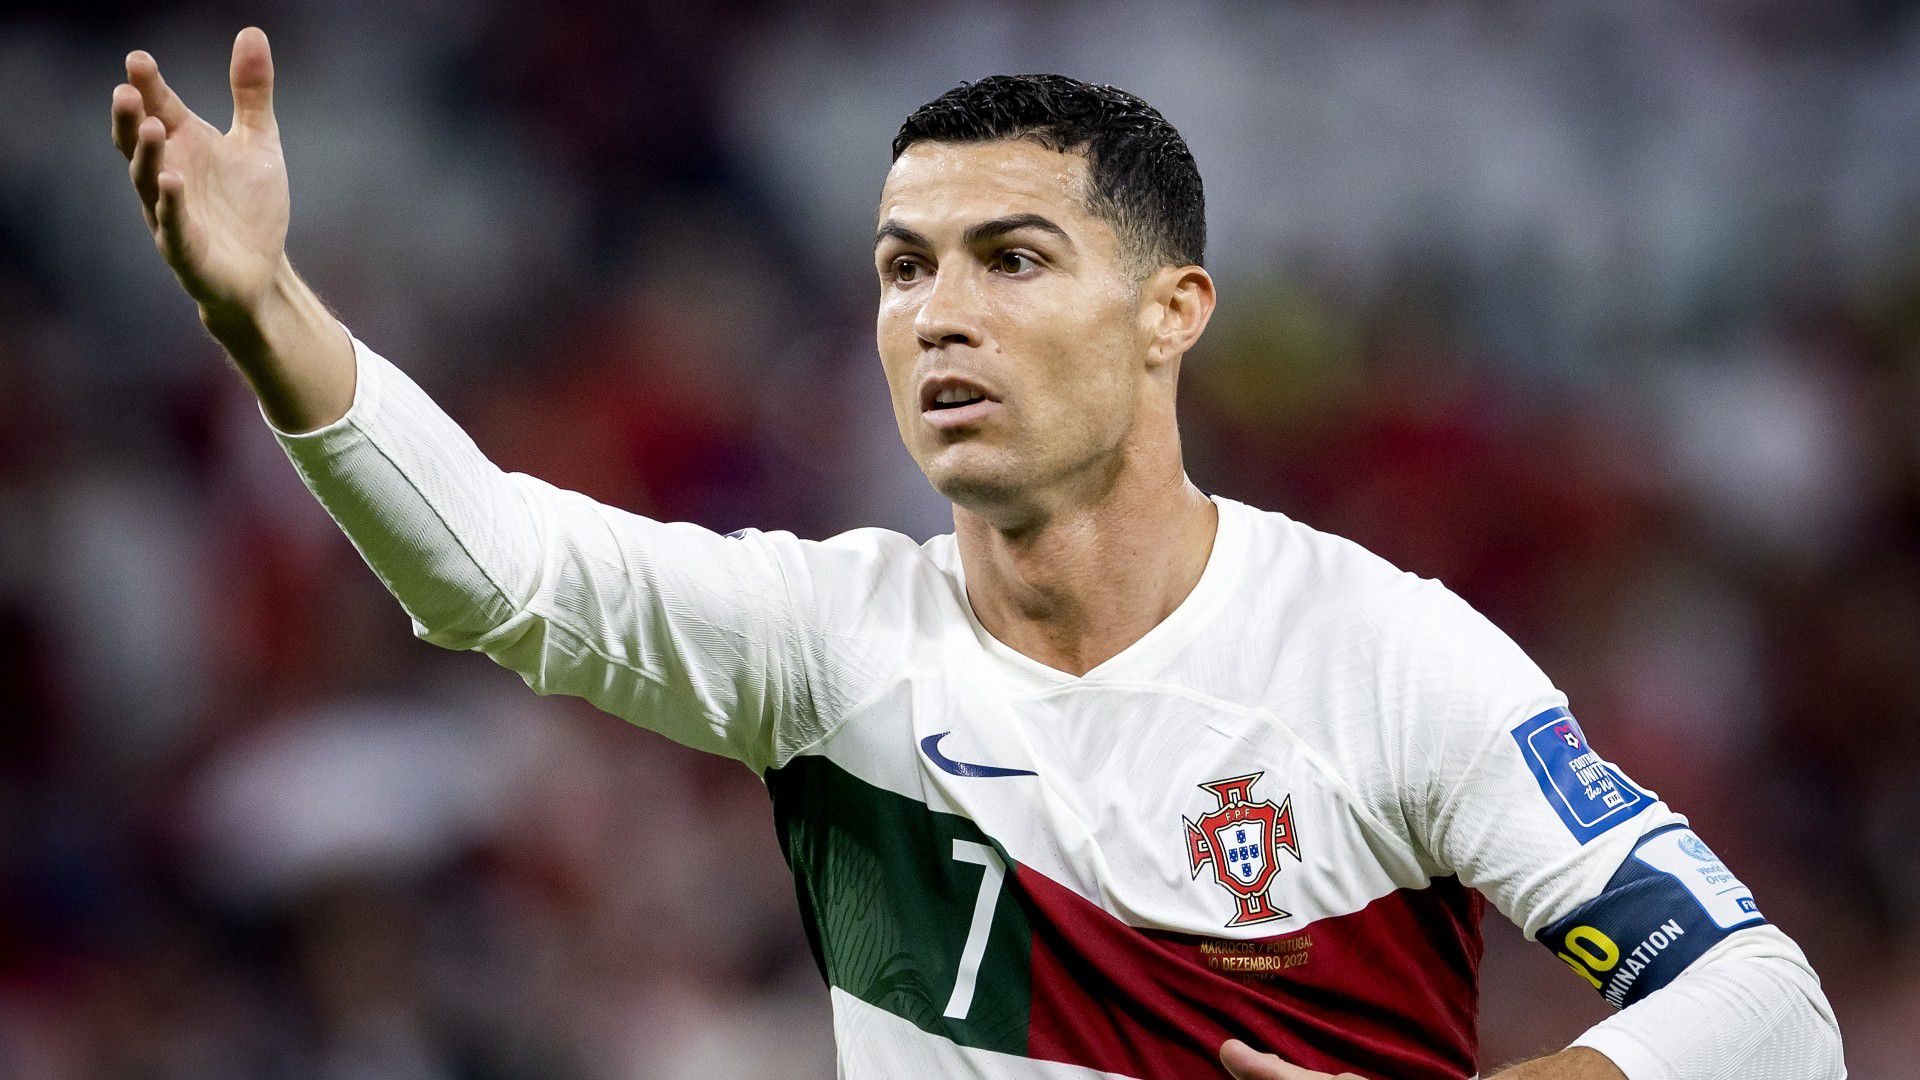 A Porto elnöke szerint Cristiano Ronaldo túl drága a portugál kluboknak (Fotó: Getty Images)